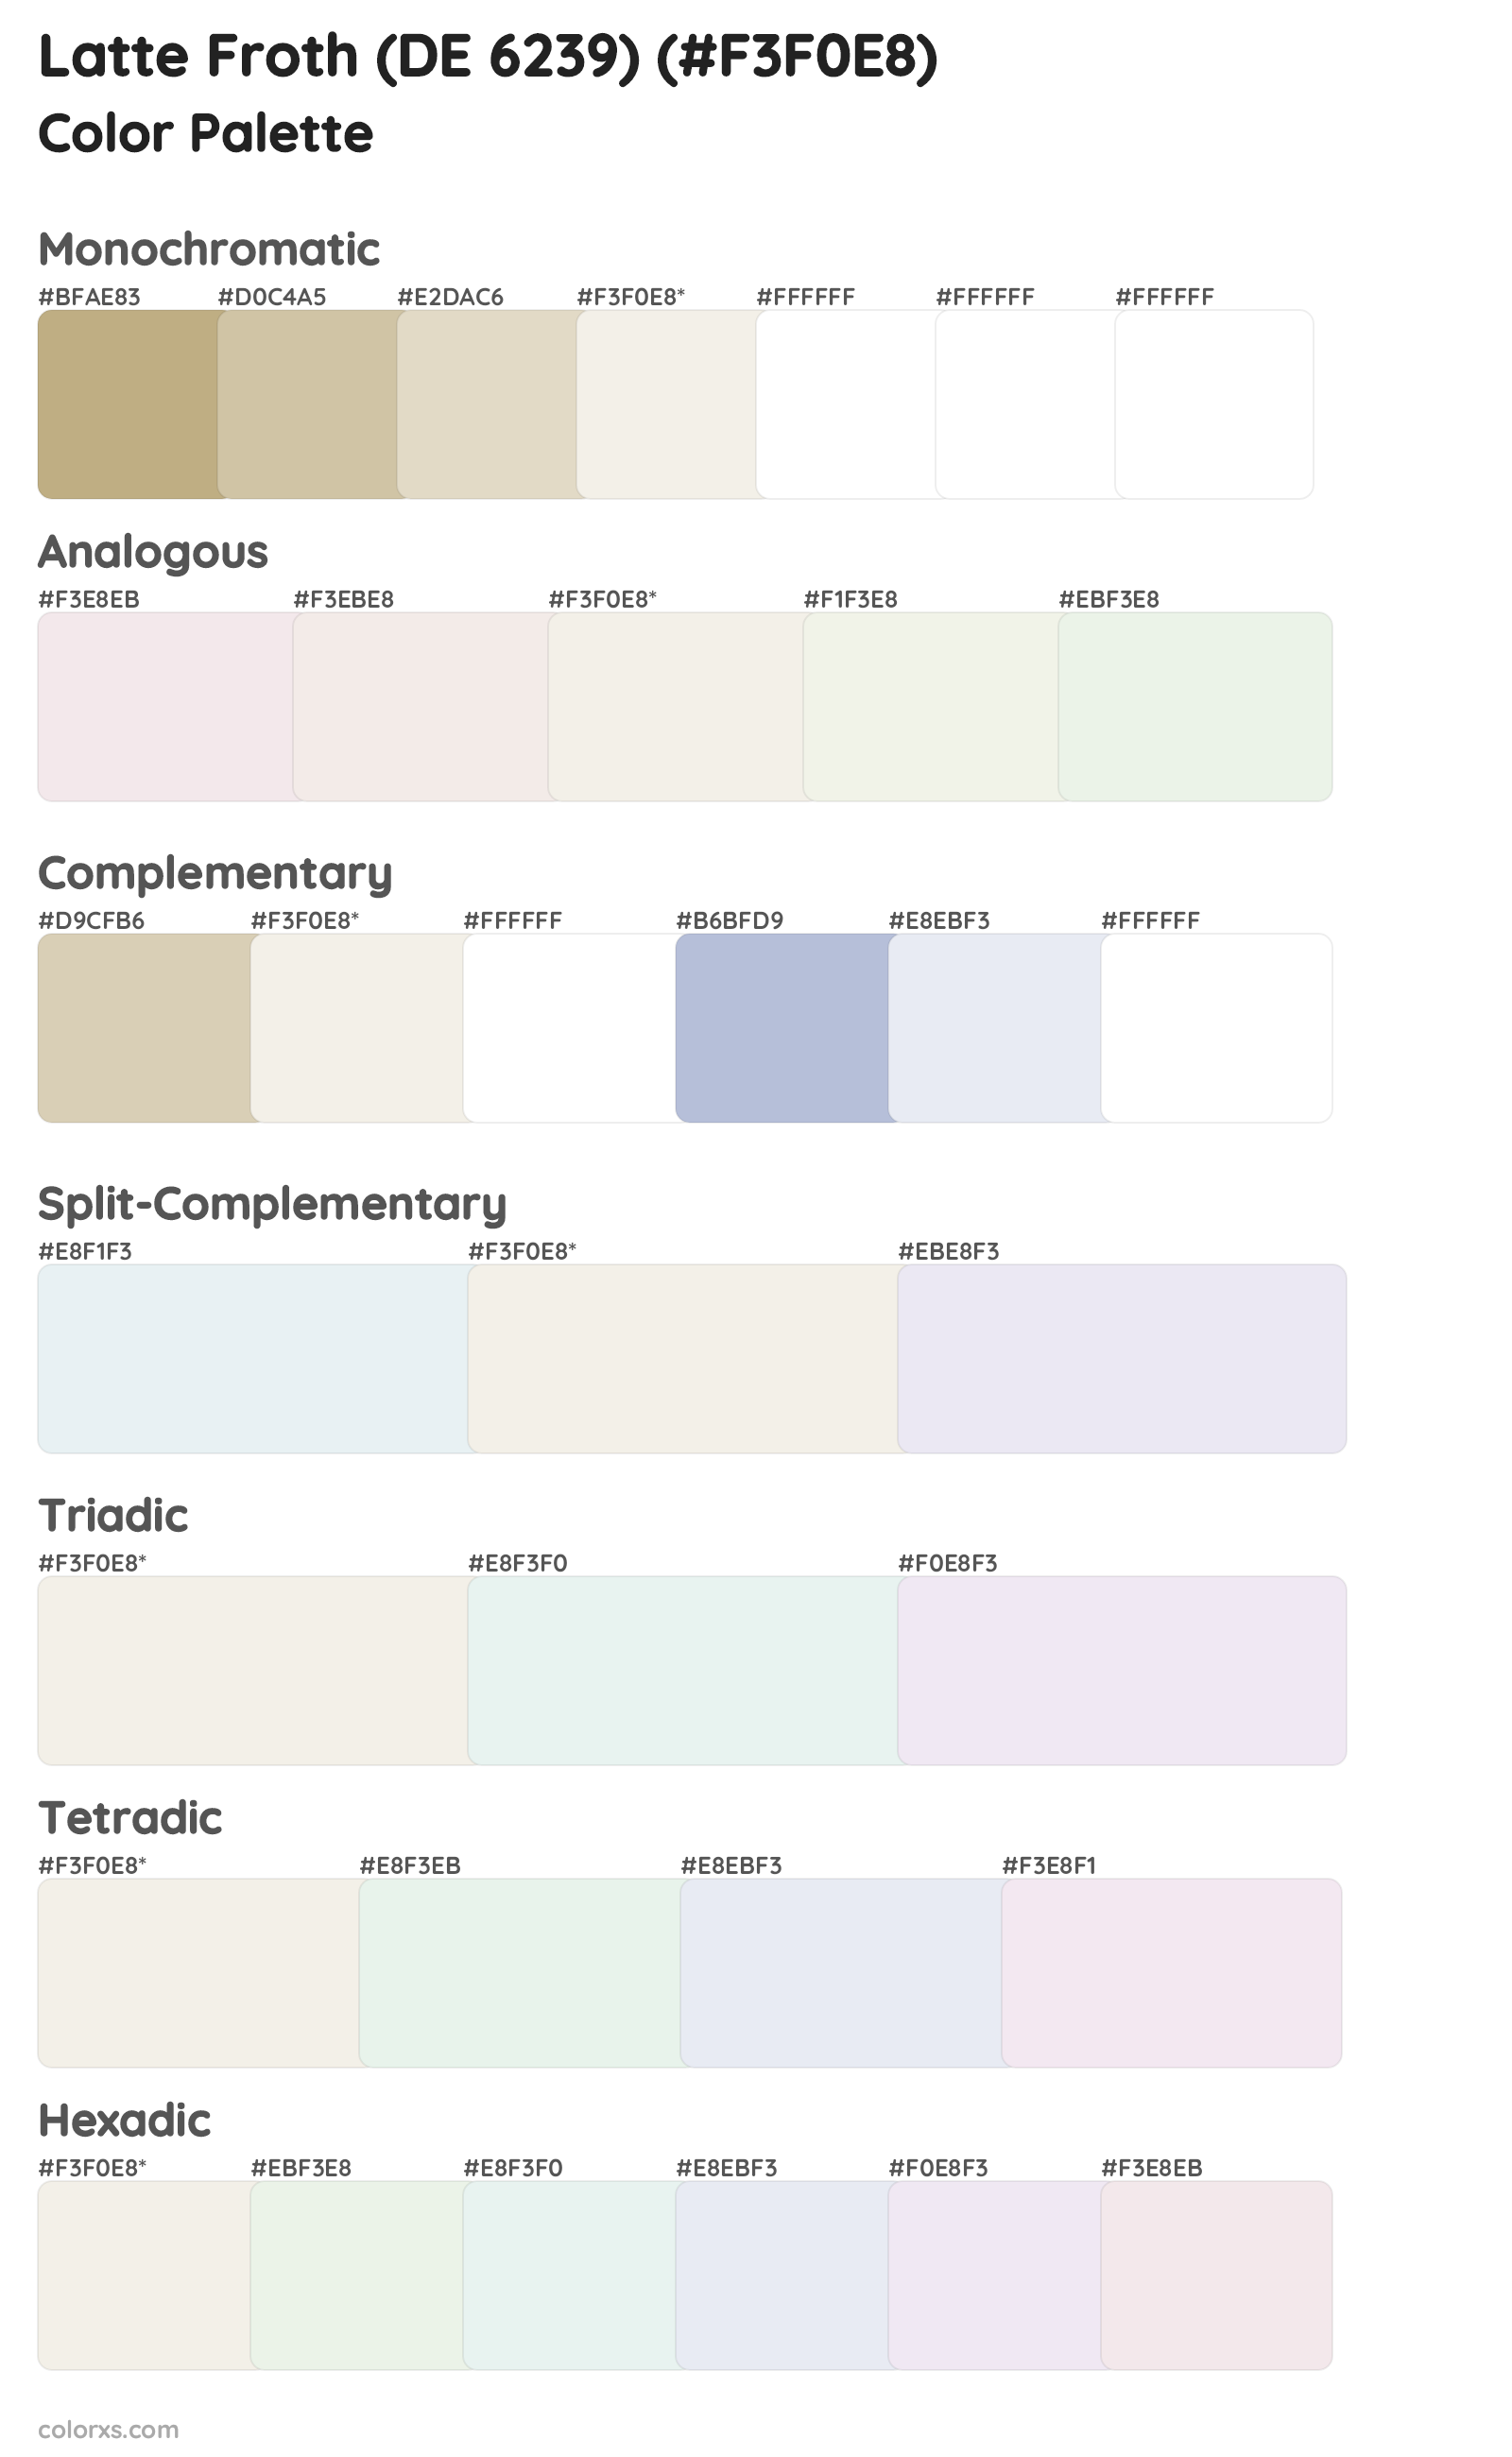 Latte Froth (DE 6239) Color Scheme Palettes